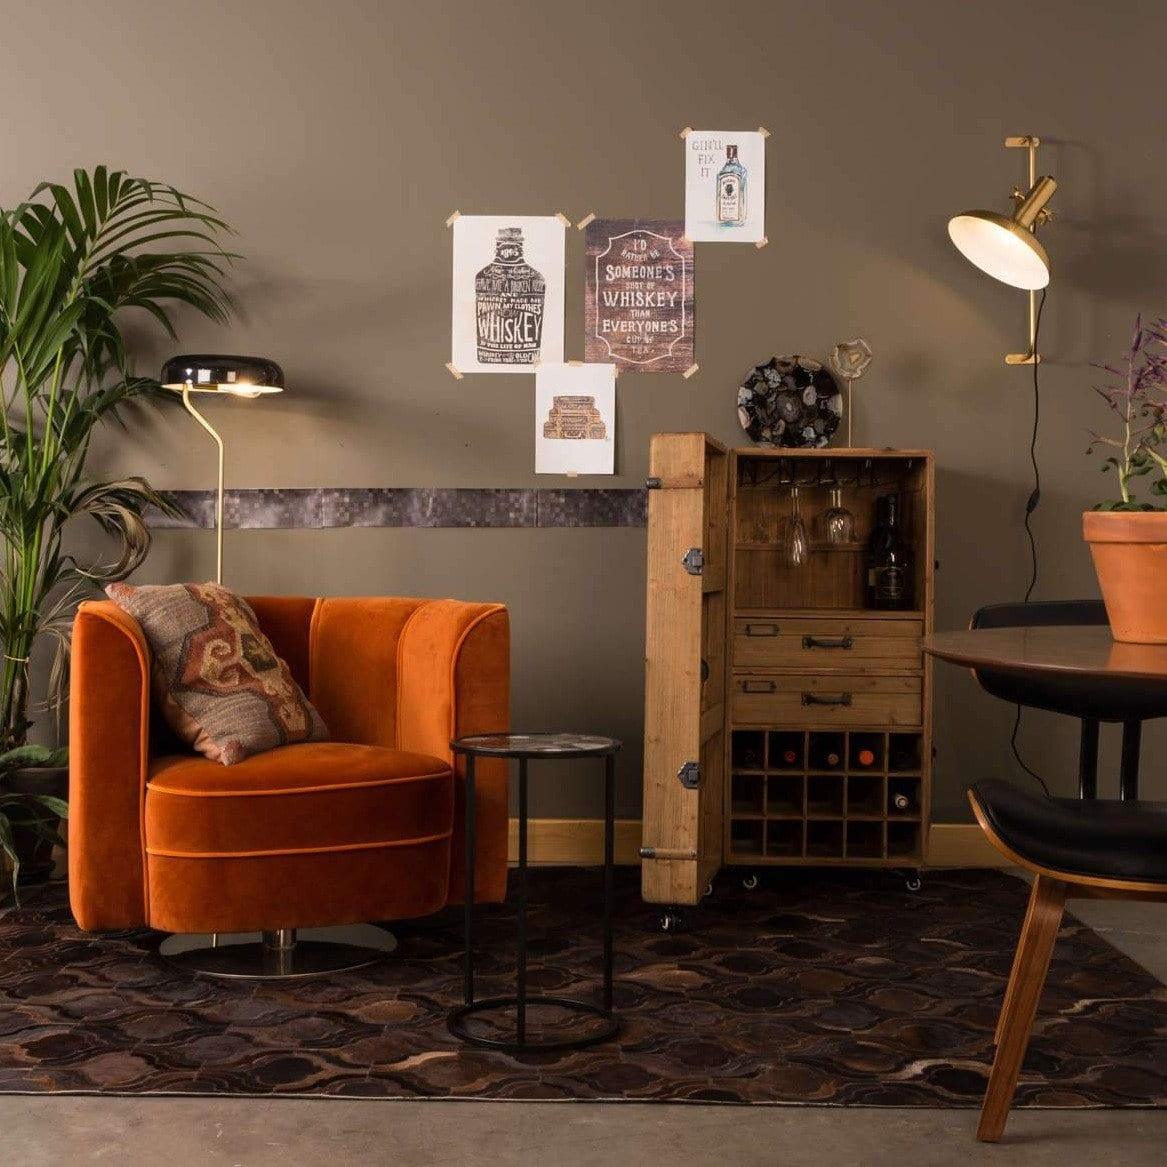 Fotel lounge FLOWER pomarańczowy Dutchbone    Eye on Design